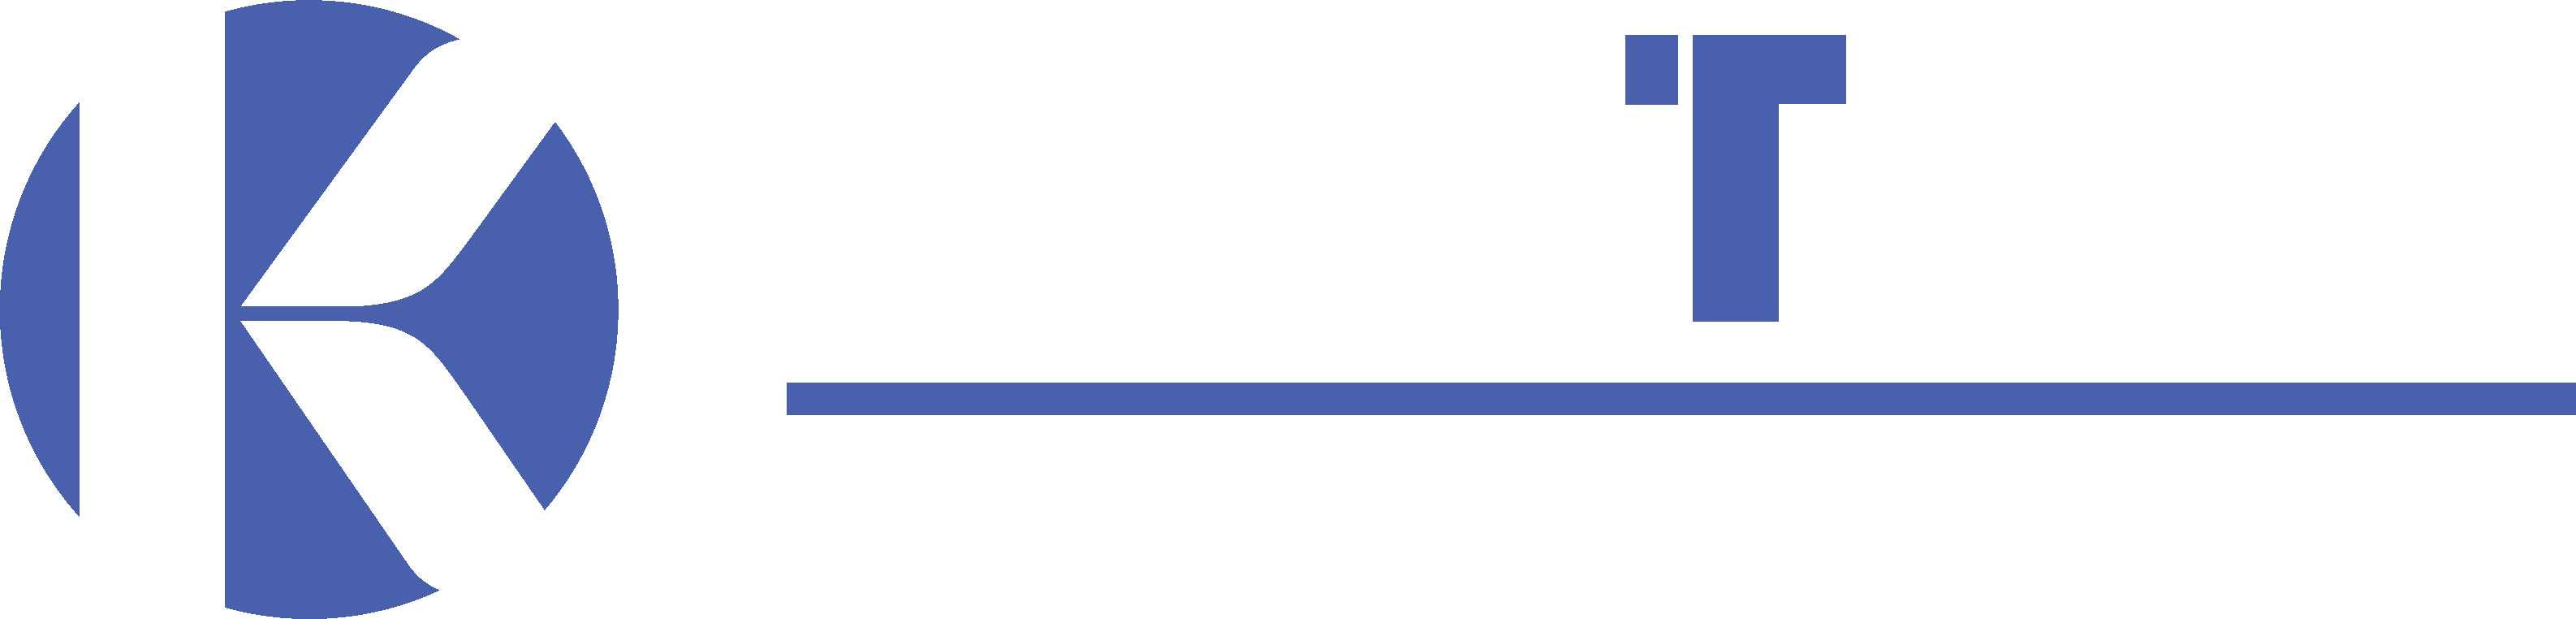 kentech.uk.com